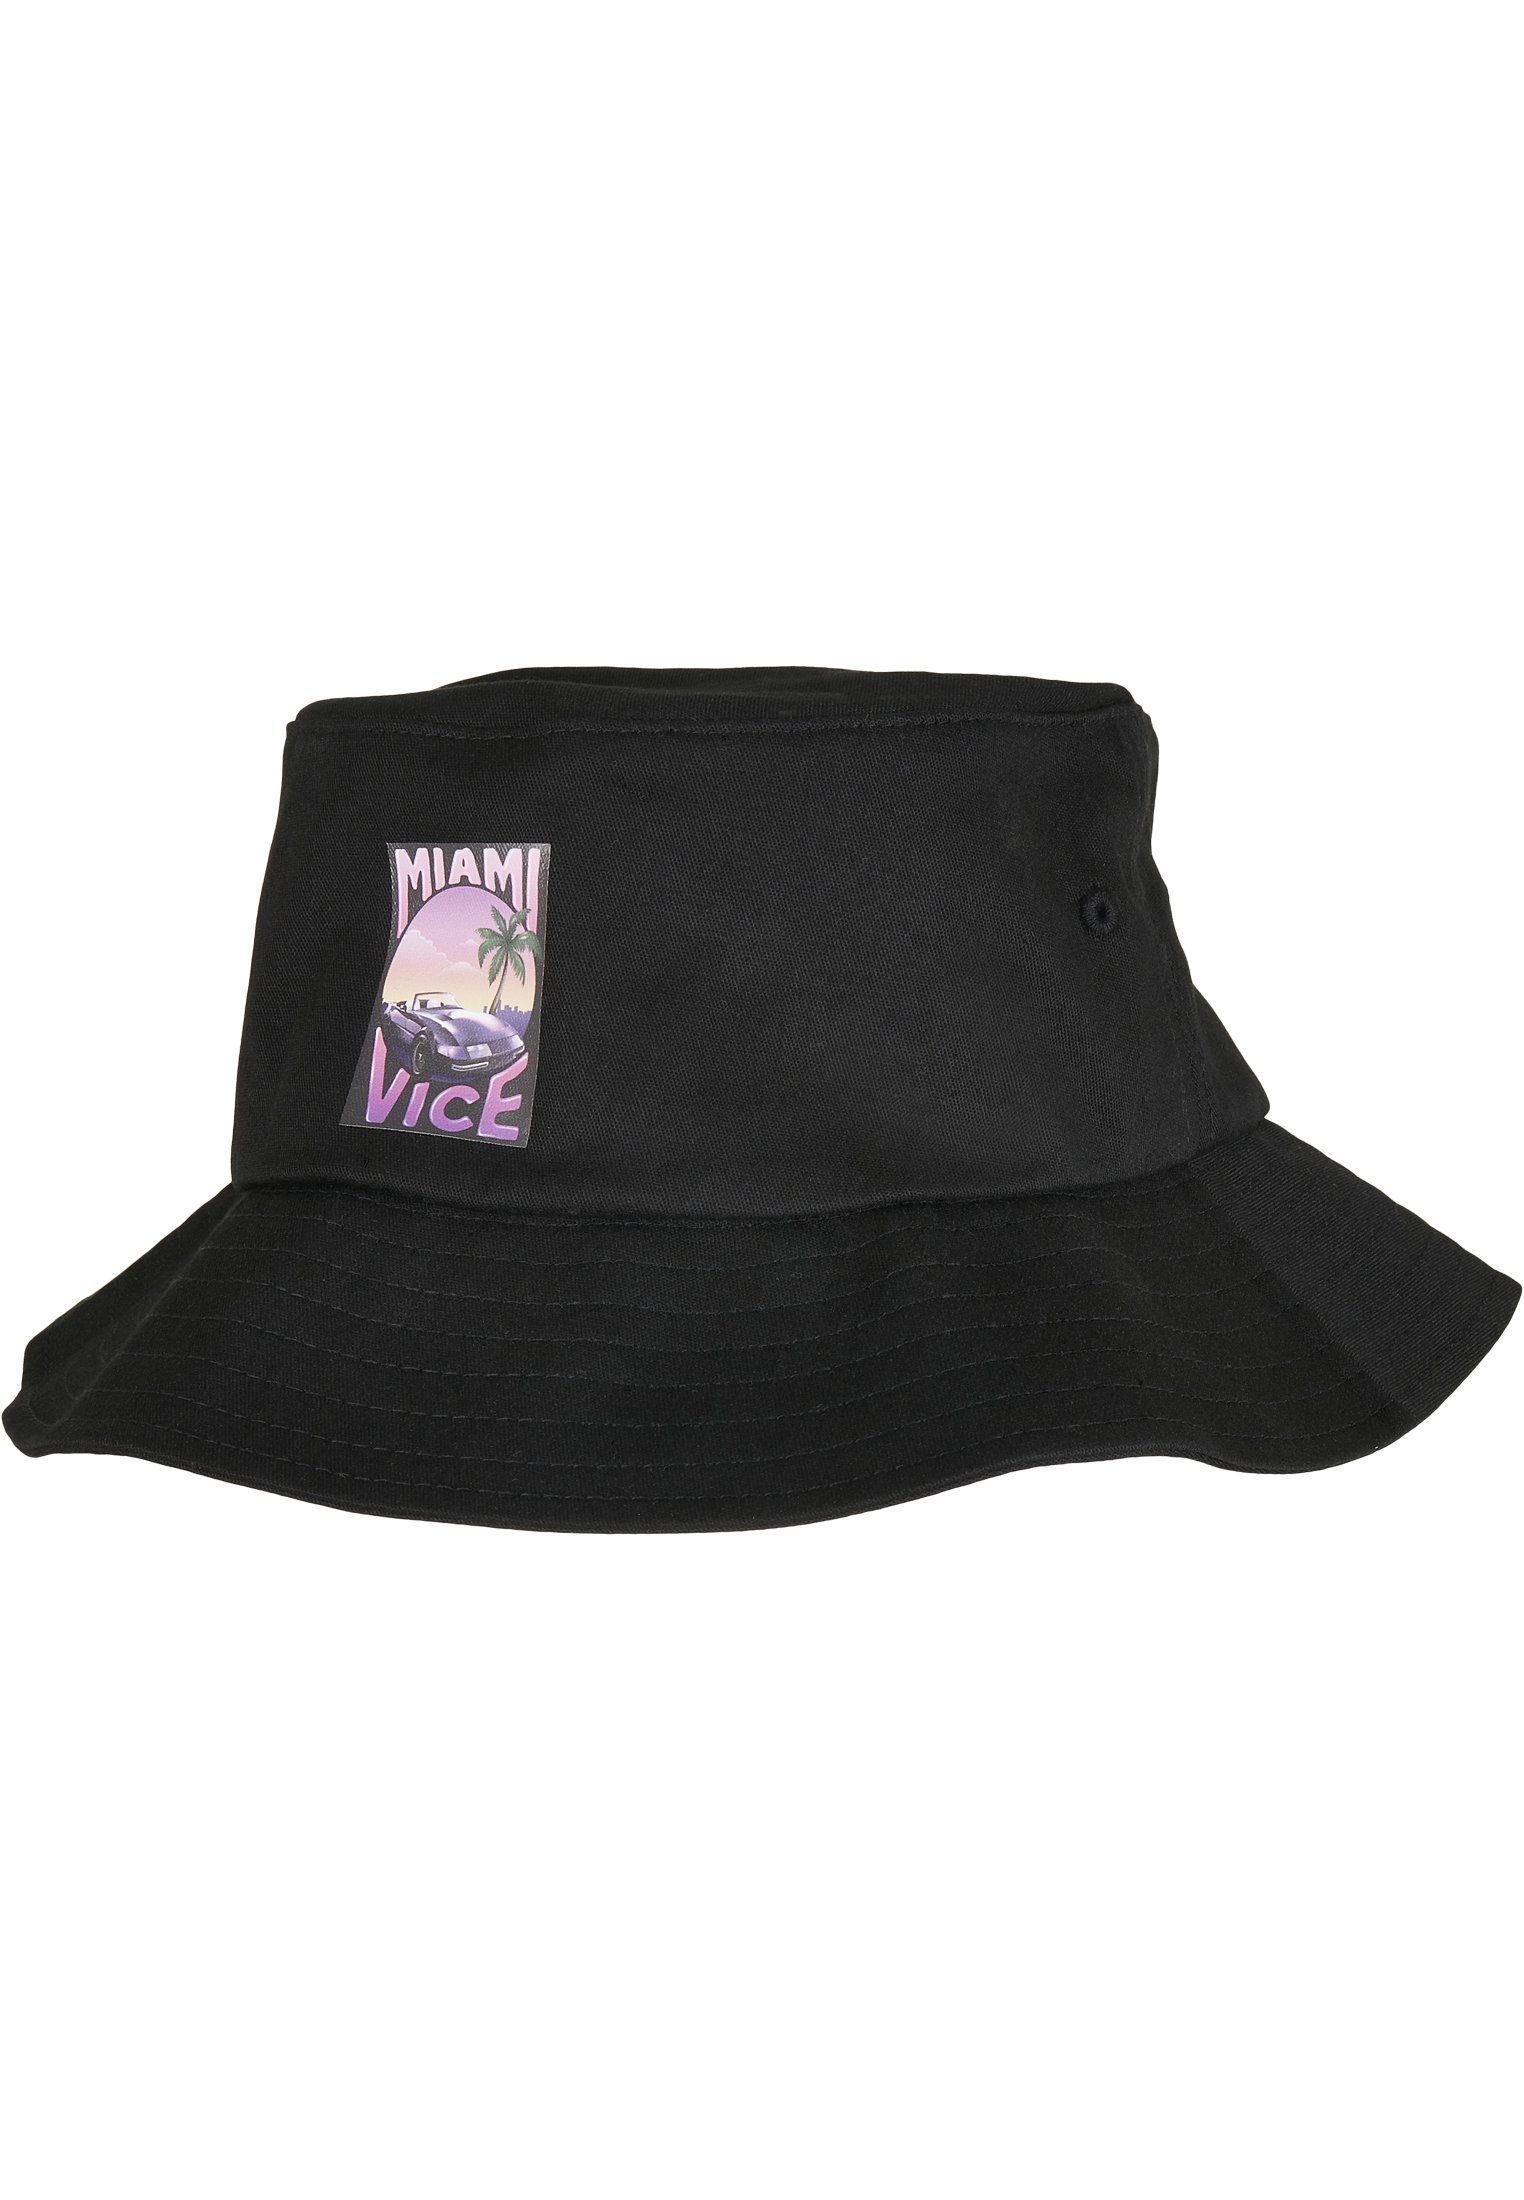 Bucket Vice Hat Hat Bucket Cap Flex Merchcode Miami Print